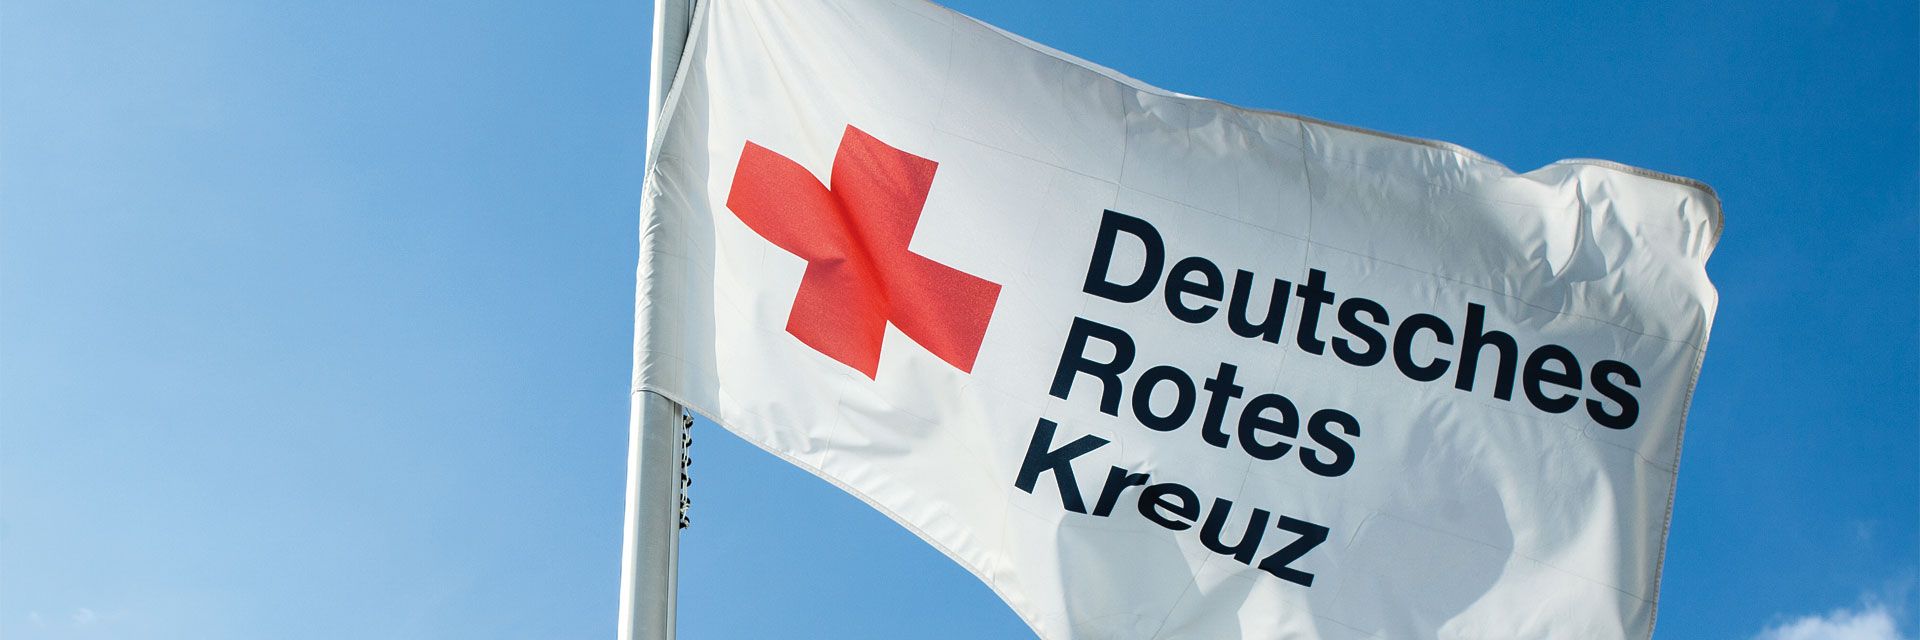 Bild: Eine Fahne des Deutschen Roten Kreuzes weht unter strahlend blauem Himmel.